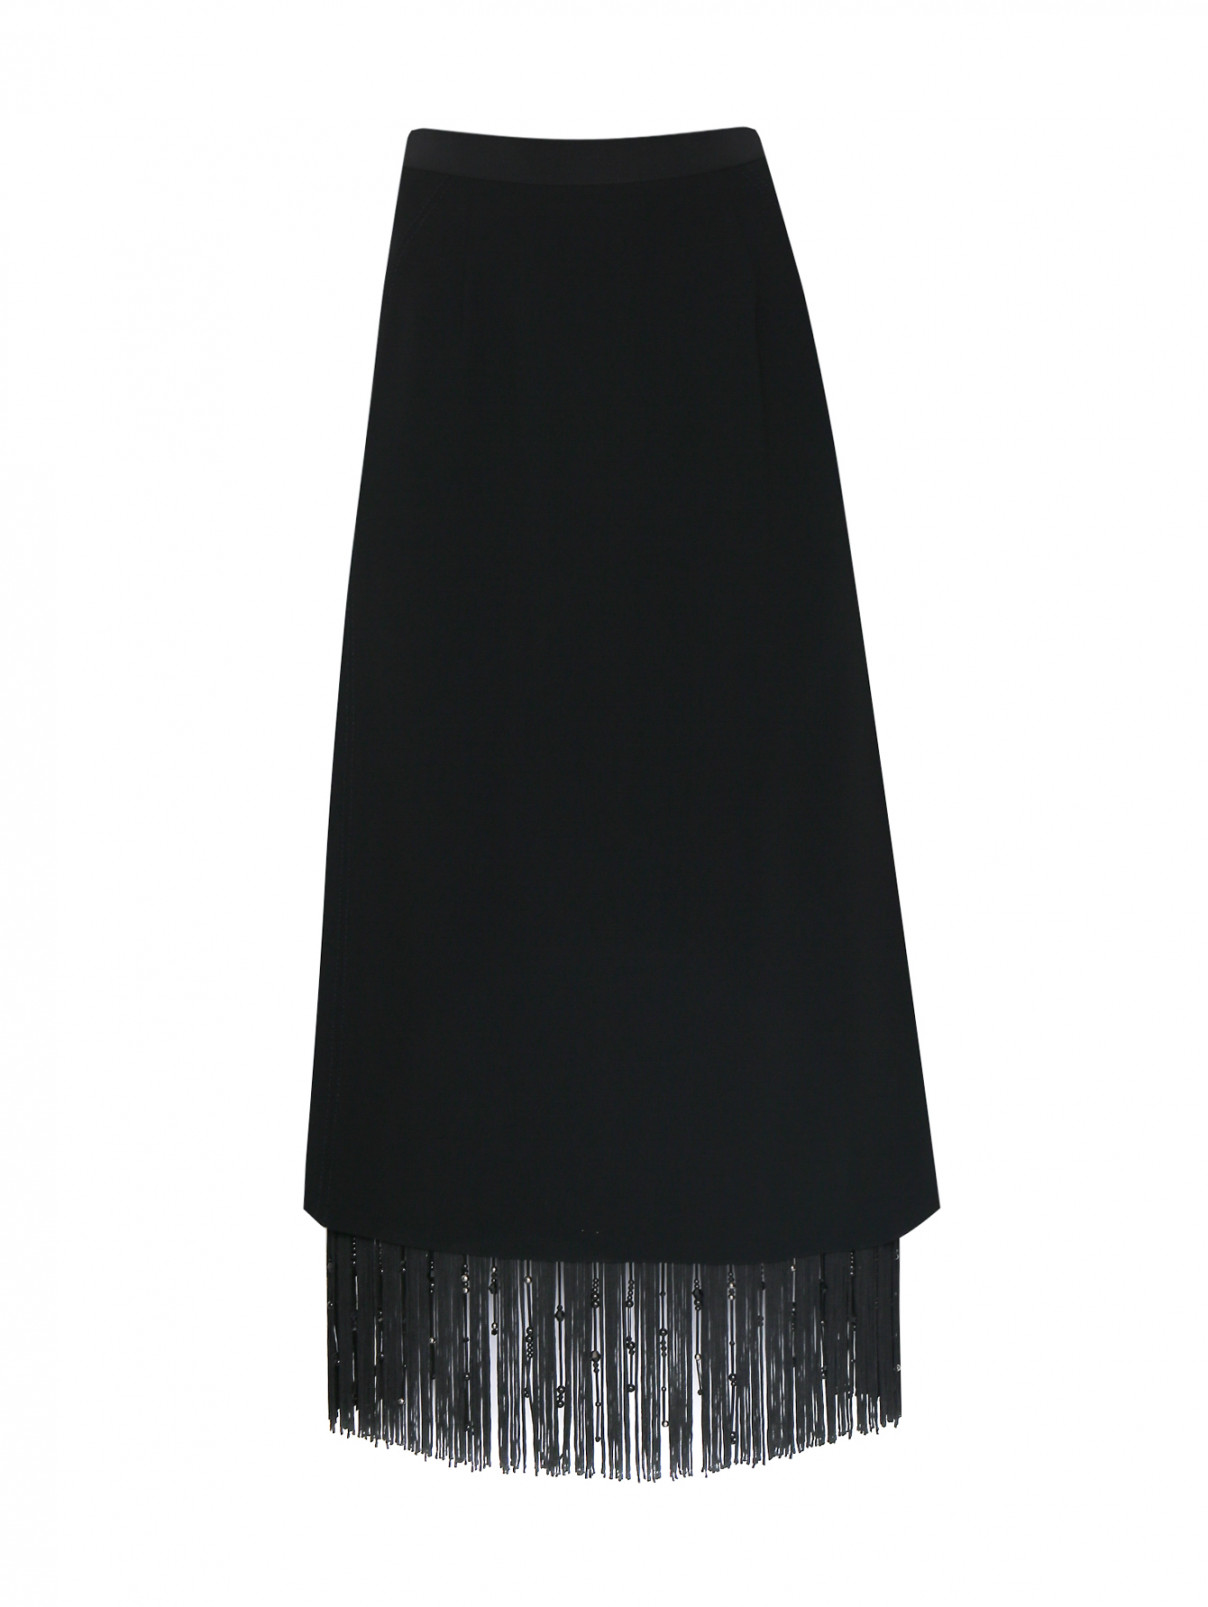 Юбка-миди декорированная бахромой Dorothee Schumacher  –  Общий вид  – Цвет:  Черный